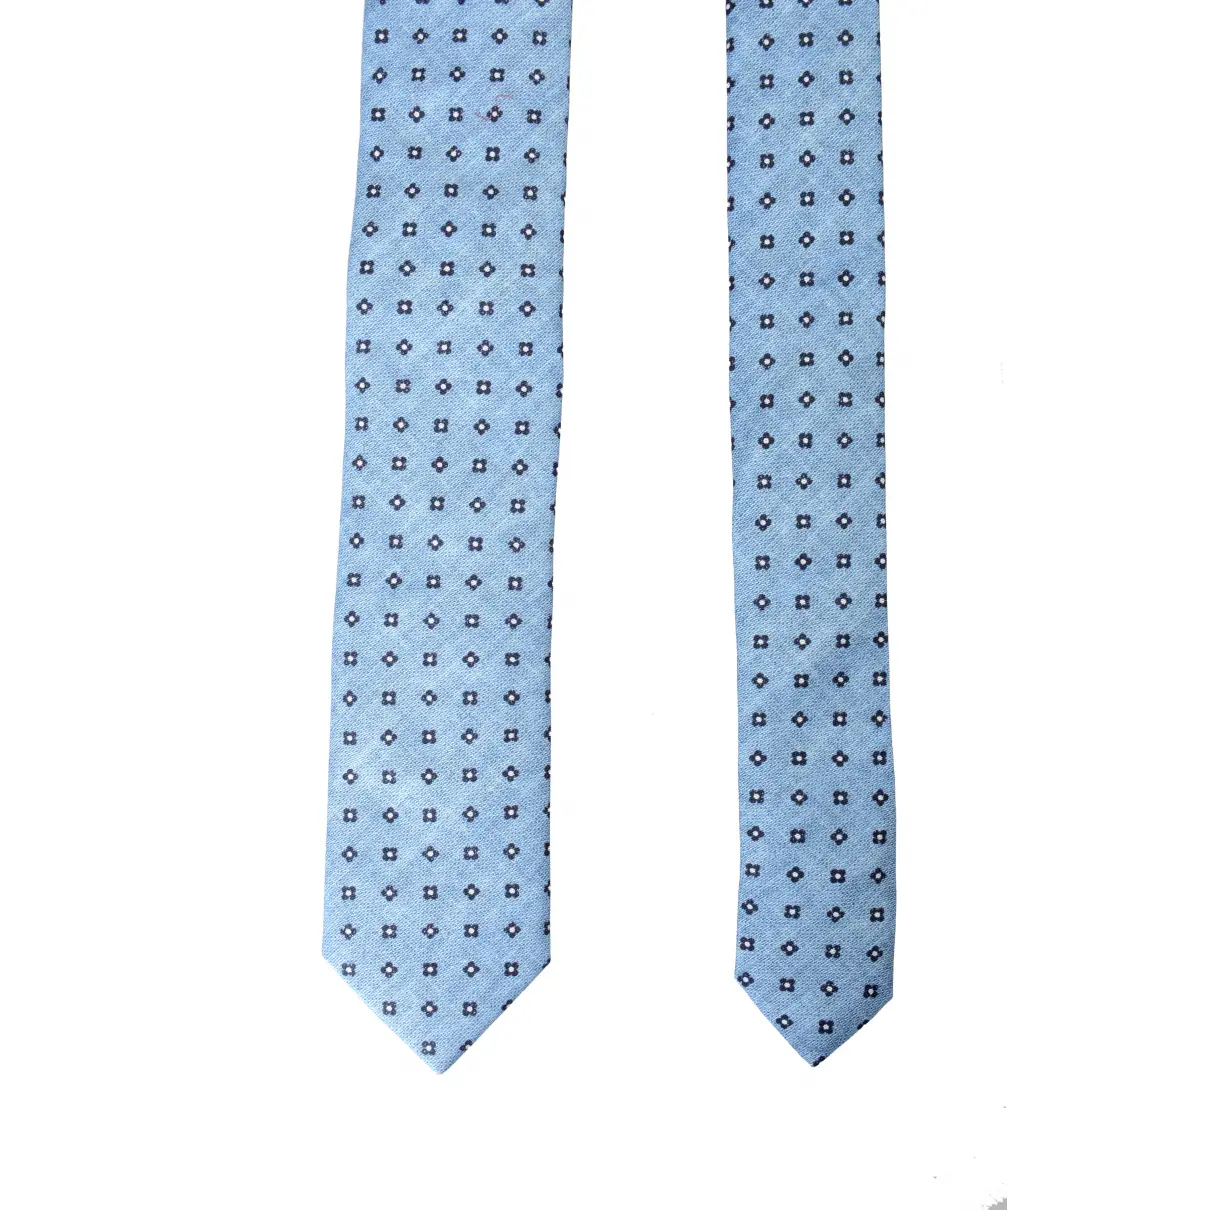 Buy Boss Tie online